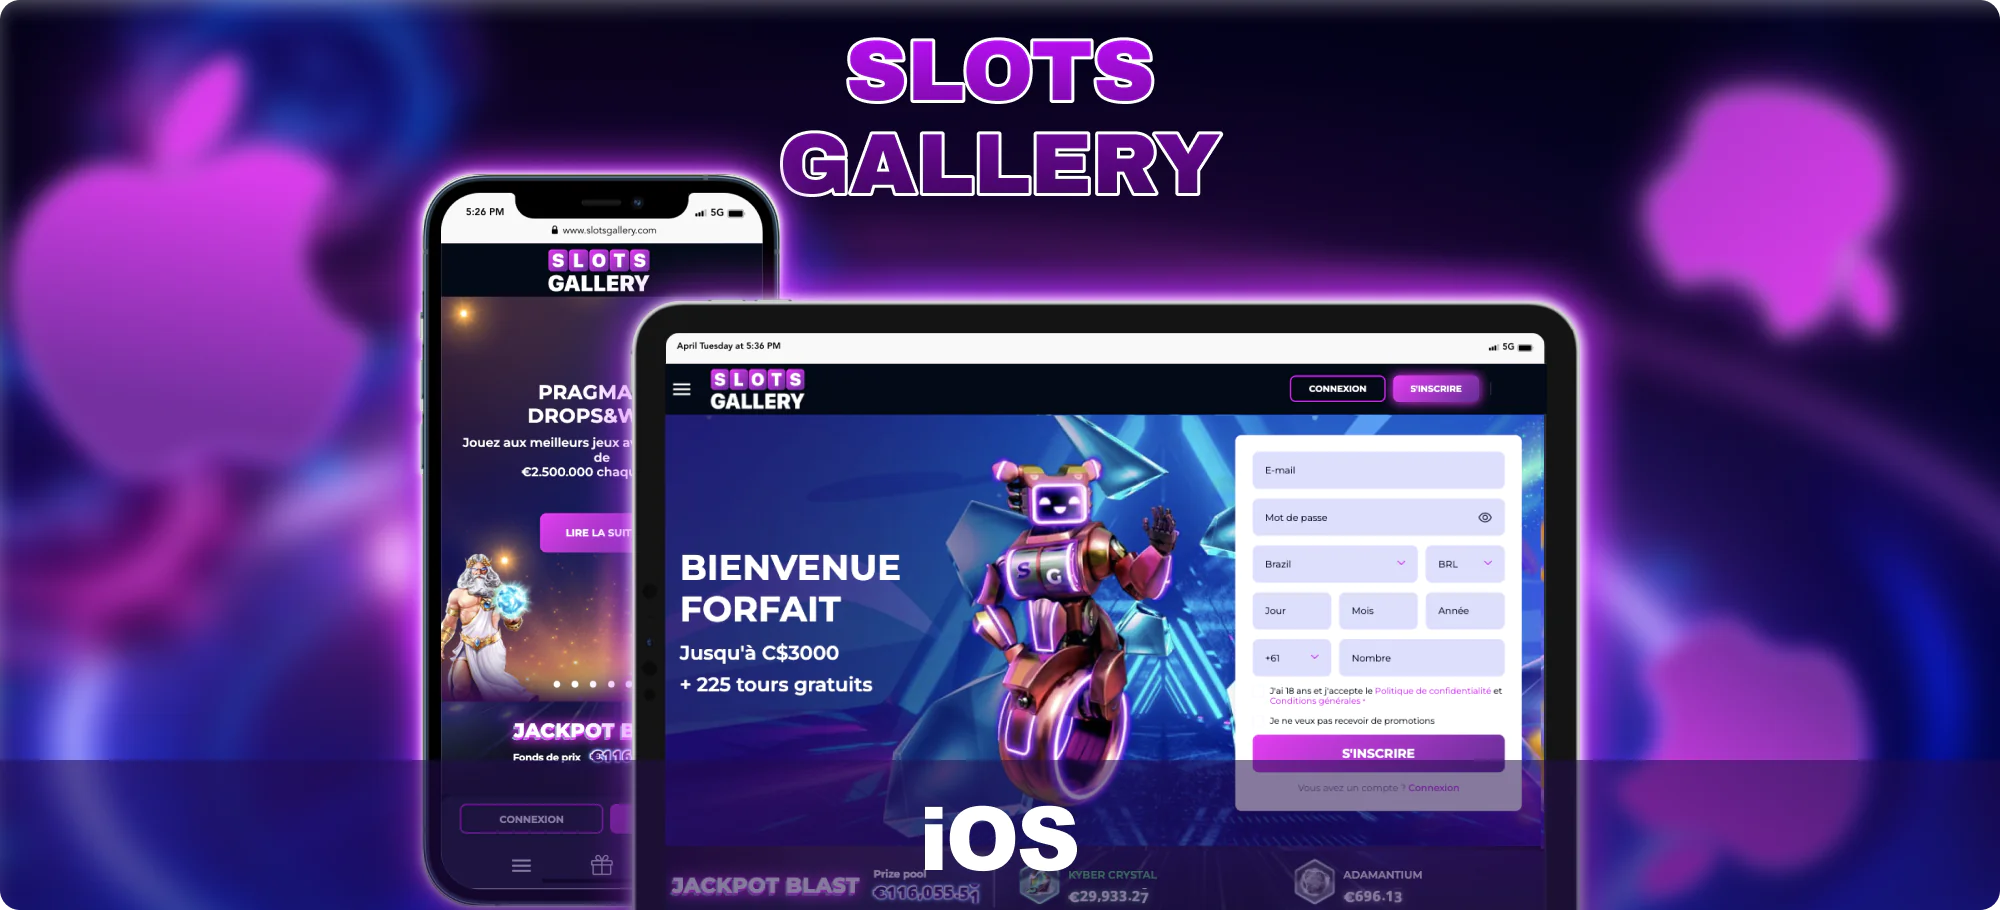 Appareils iOS disponibles pour jouer sur Slots Gallery pour les joueurs canadiens